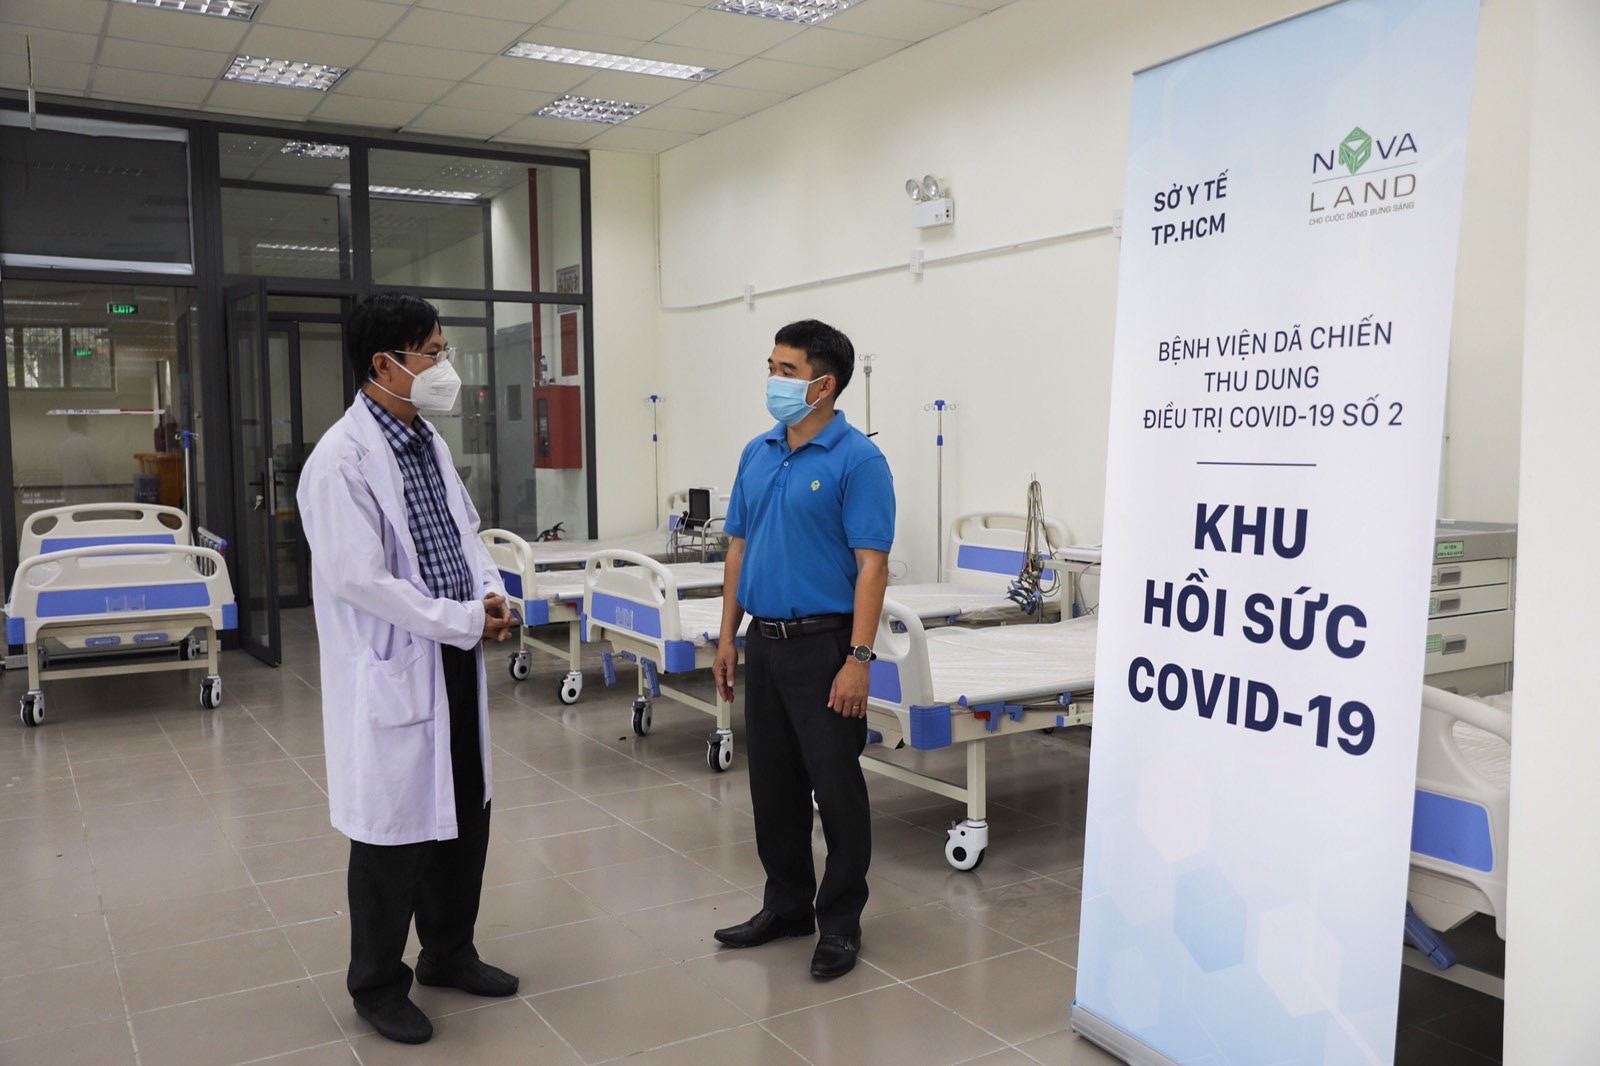 Novaland hoàn thành xây dựng Bệnh viện dã chiến thu dung điều trị COVID-19 số 2 - Ảnh: Novaland